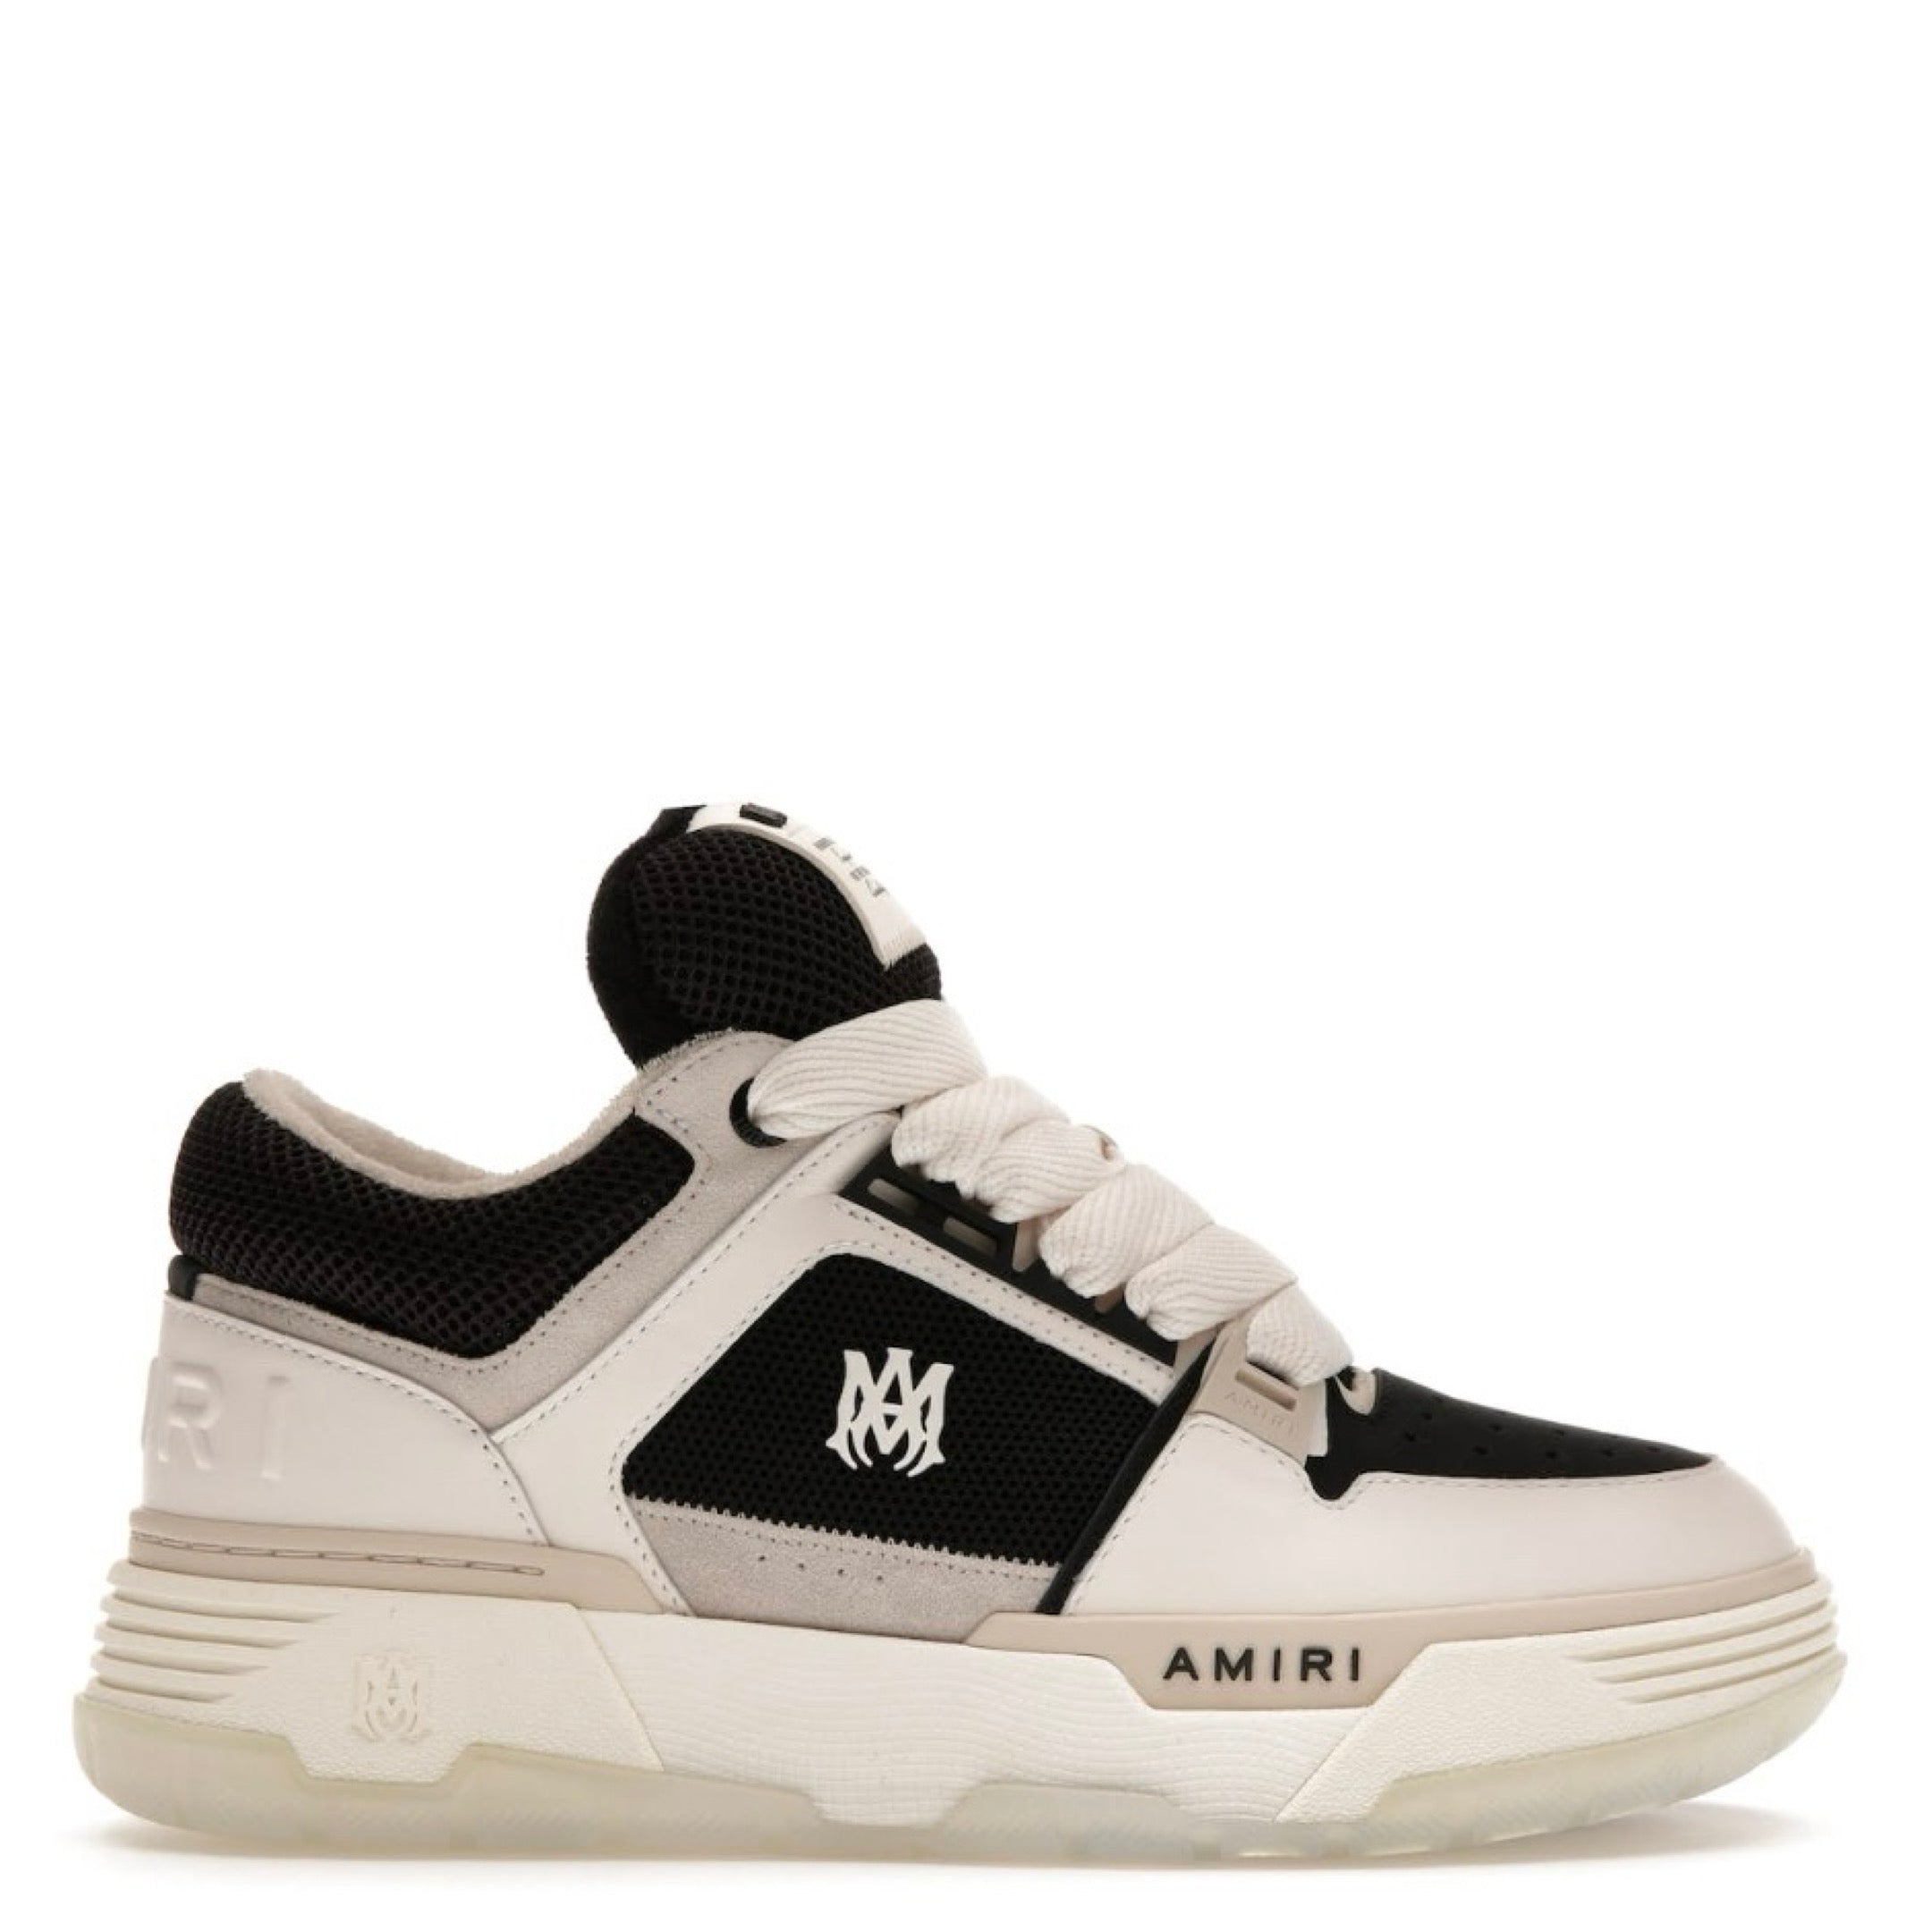 AMIRI Leather MA-1 Sneakers WHITE/BLACK